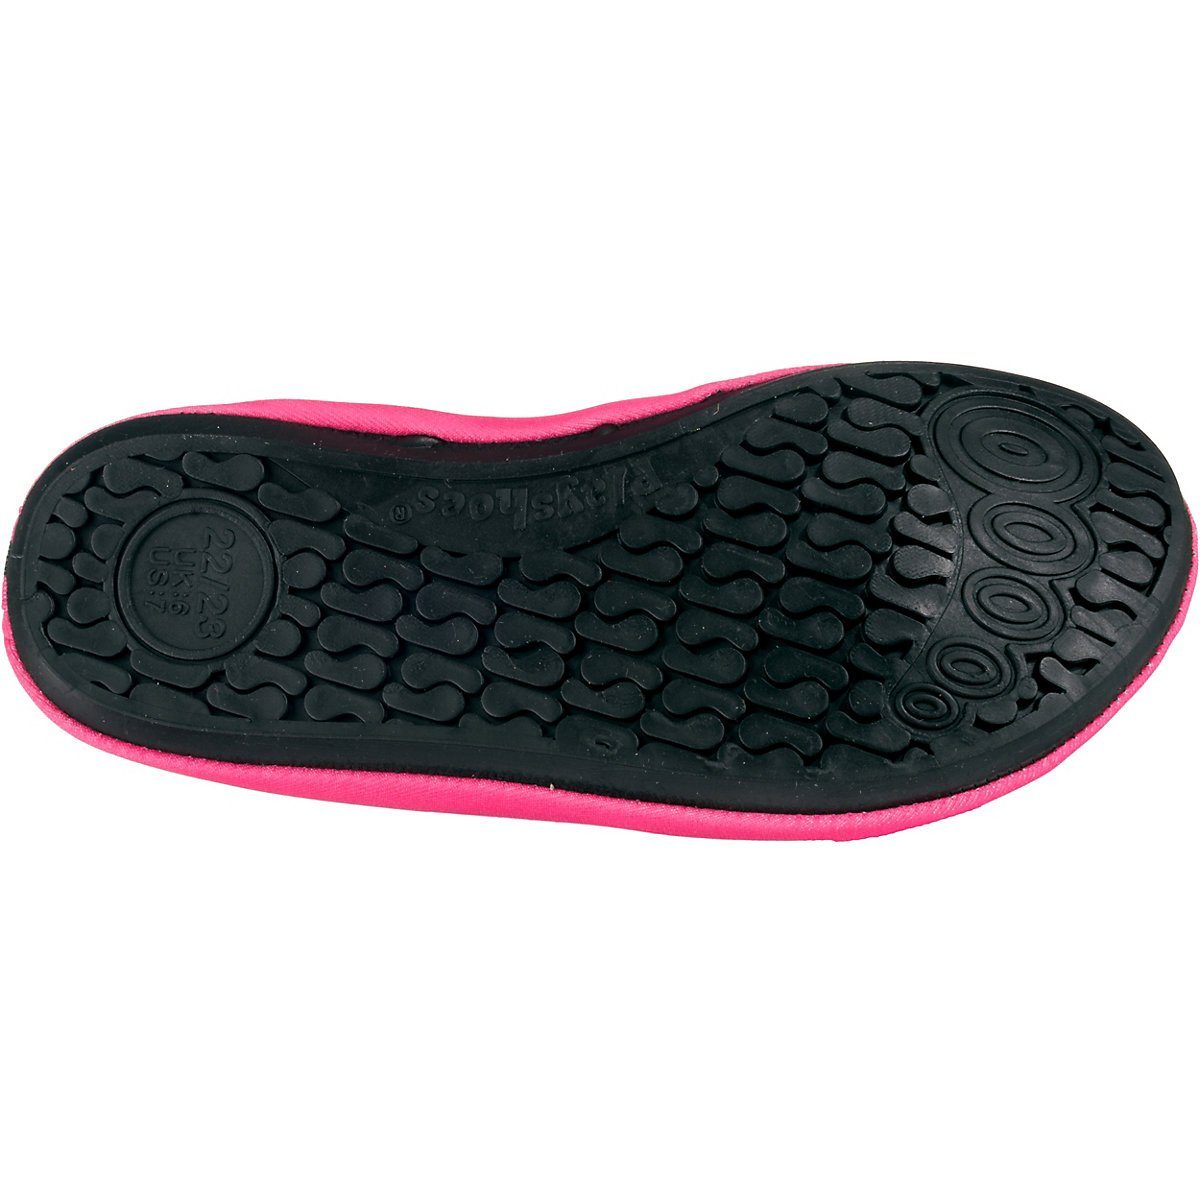 Playshoes Badeschuhe Badeschuh Passform, flexible rosa Schwimmschuhe, Wasserschuhe Uni rutschhemmender Sohle mit Barfuß-Schuh